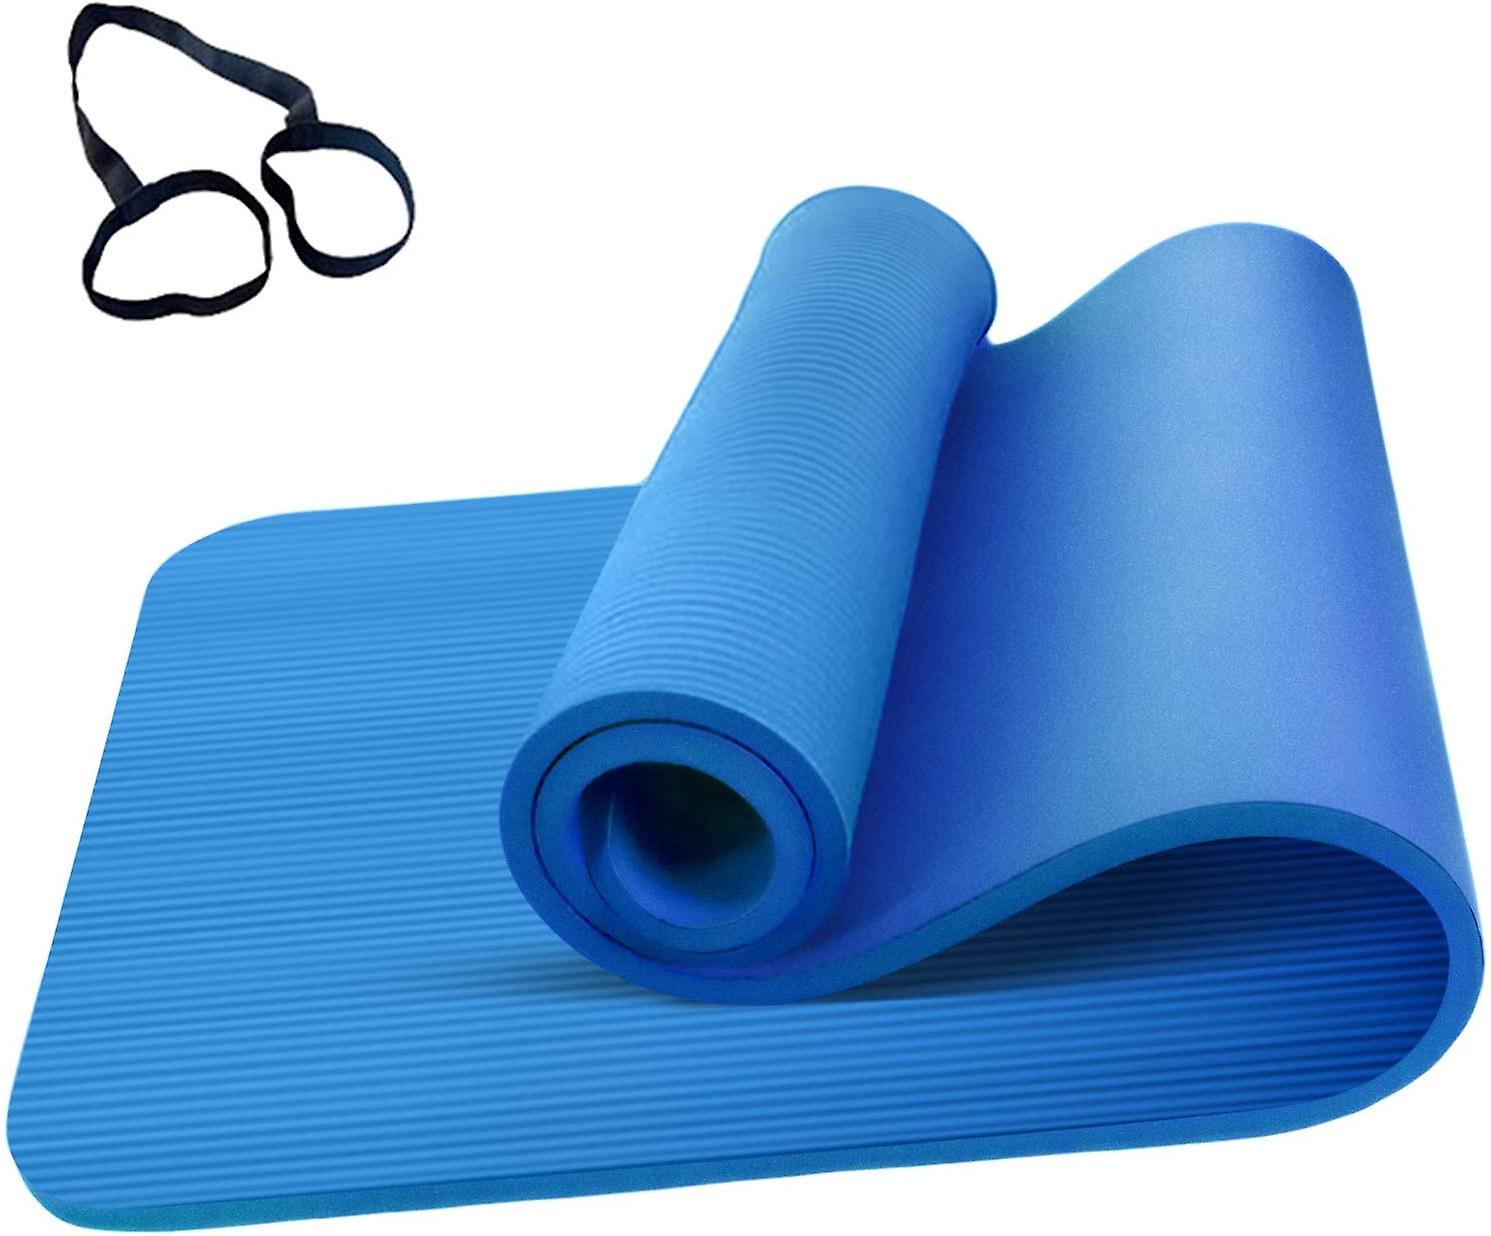 Exquisite Blue Yoga & Fitness Mat: un nuovo livello di comfort e stile